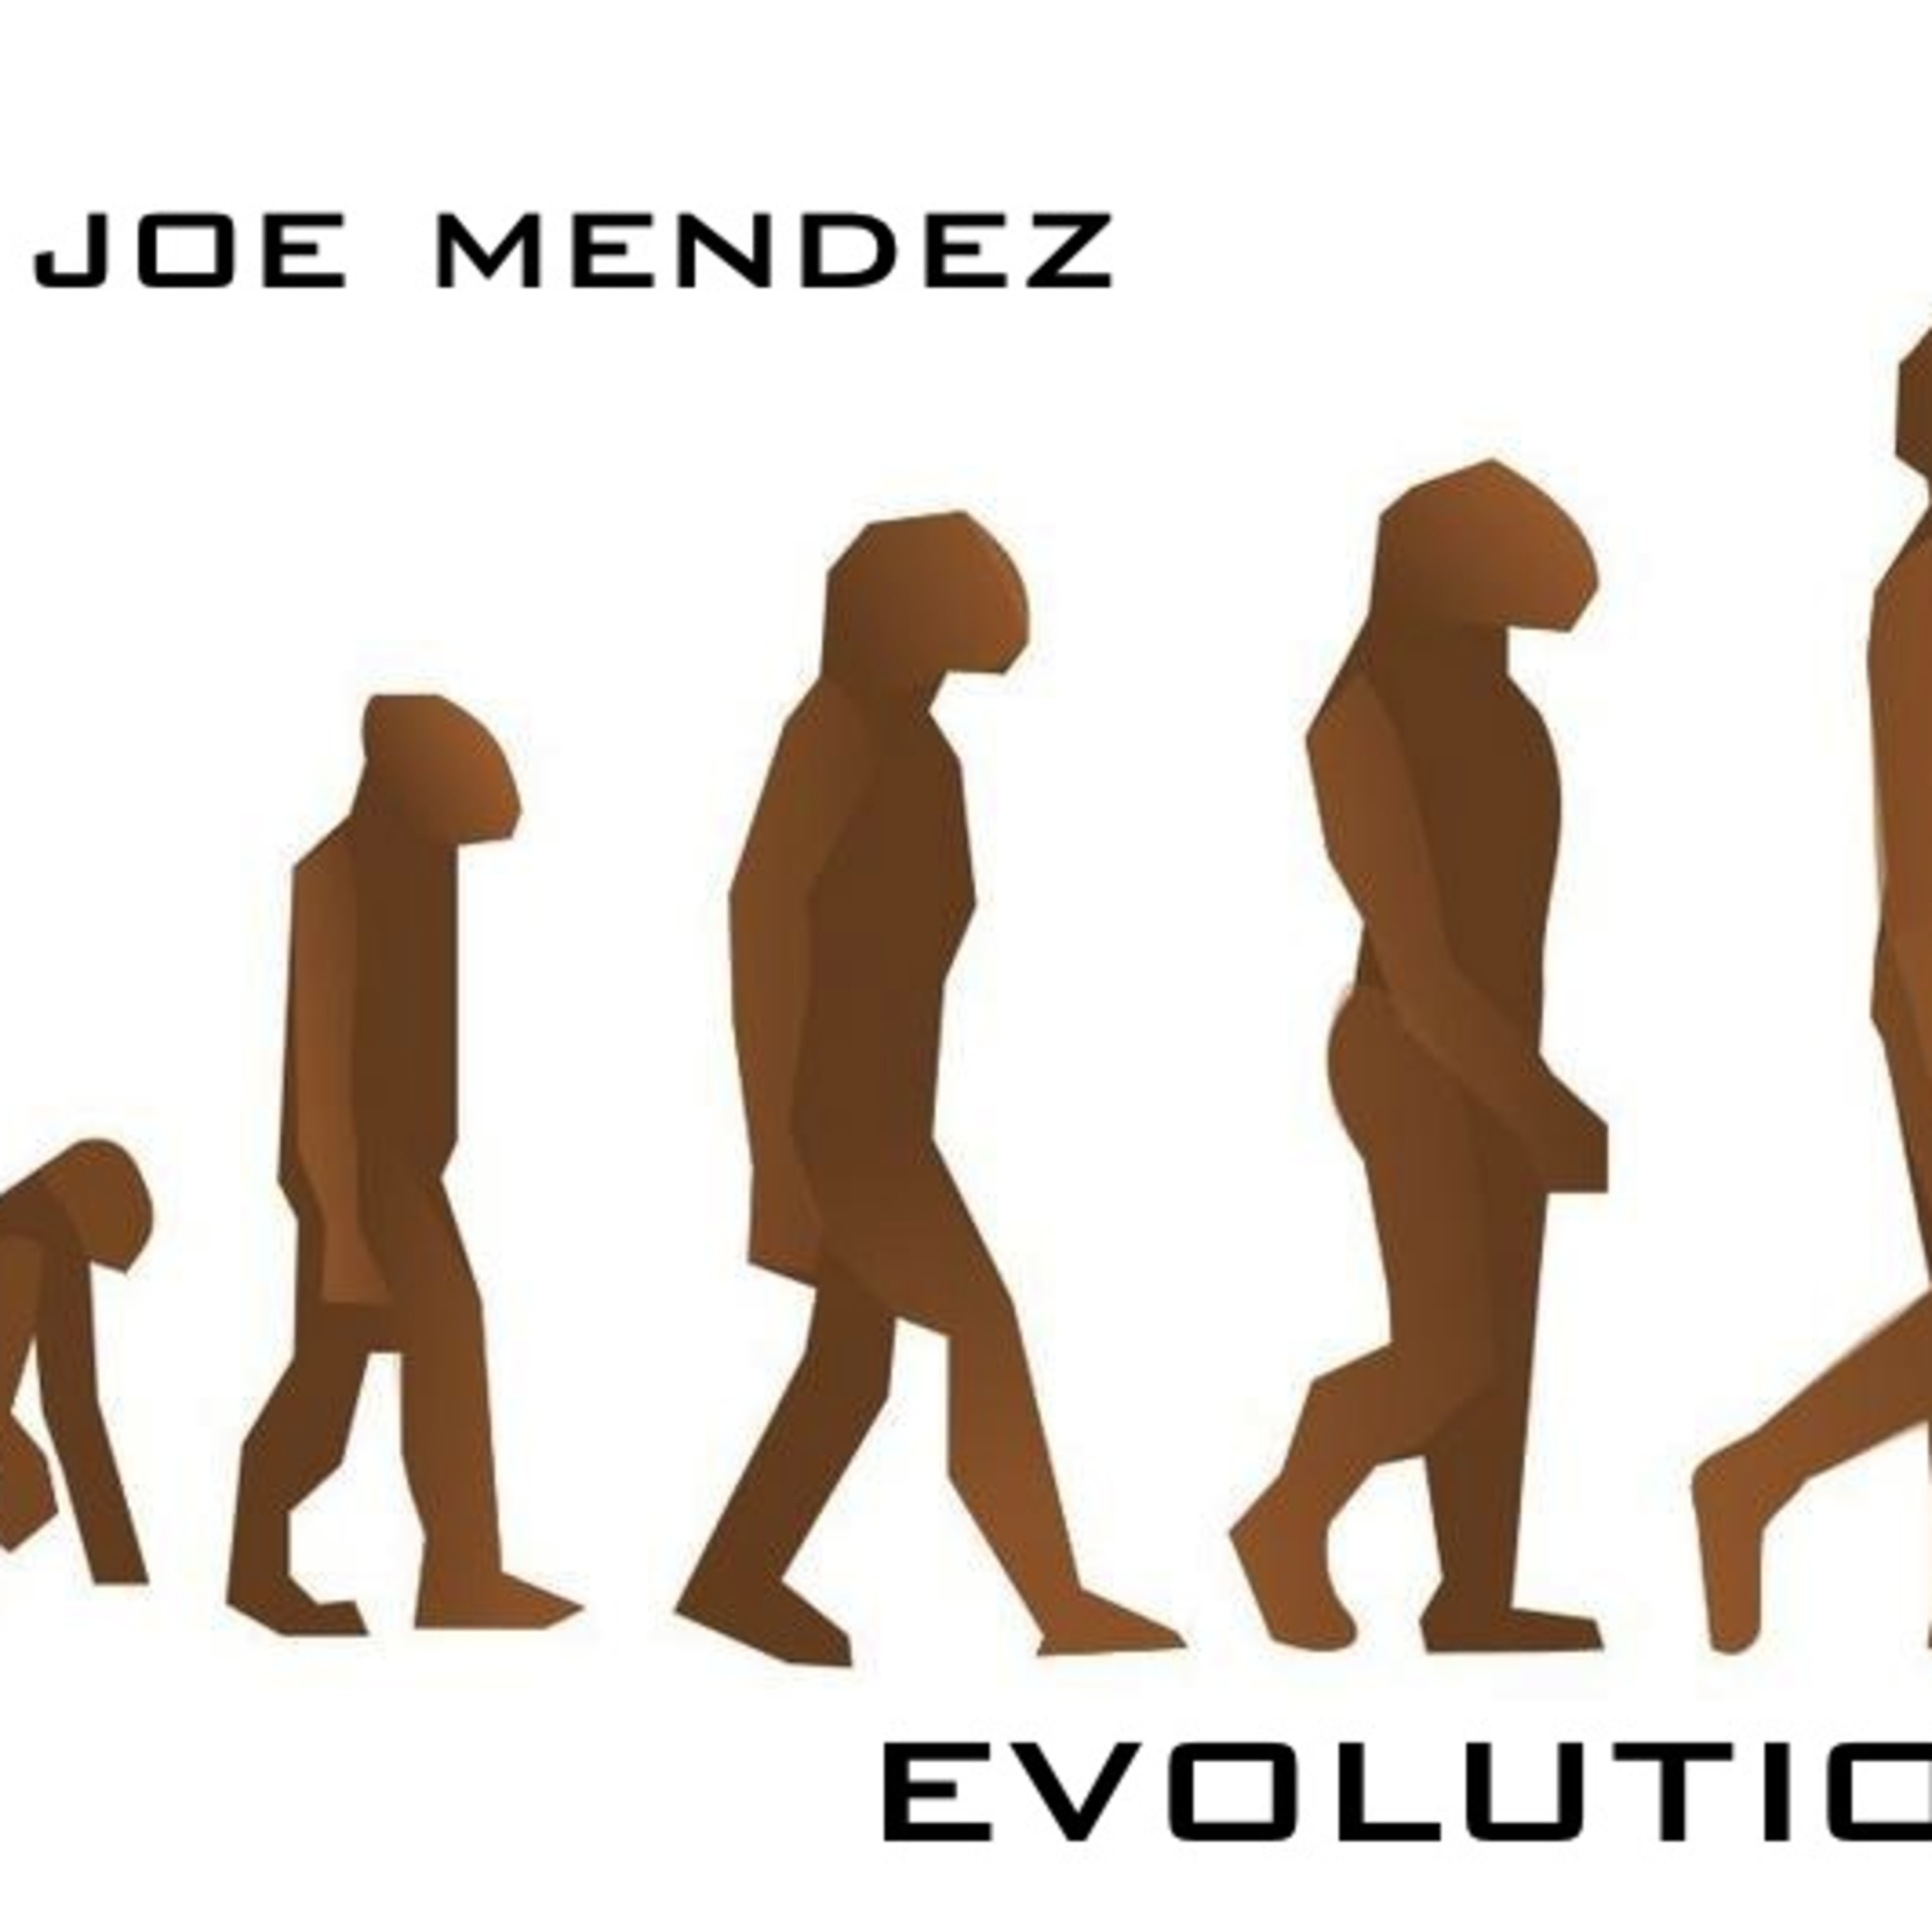 Дж эволюция. Эволюция. Эволюция человека. Эволюция картинки. Эволюционная теория картинки.